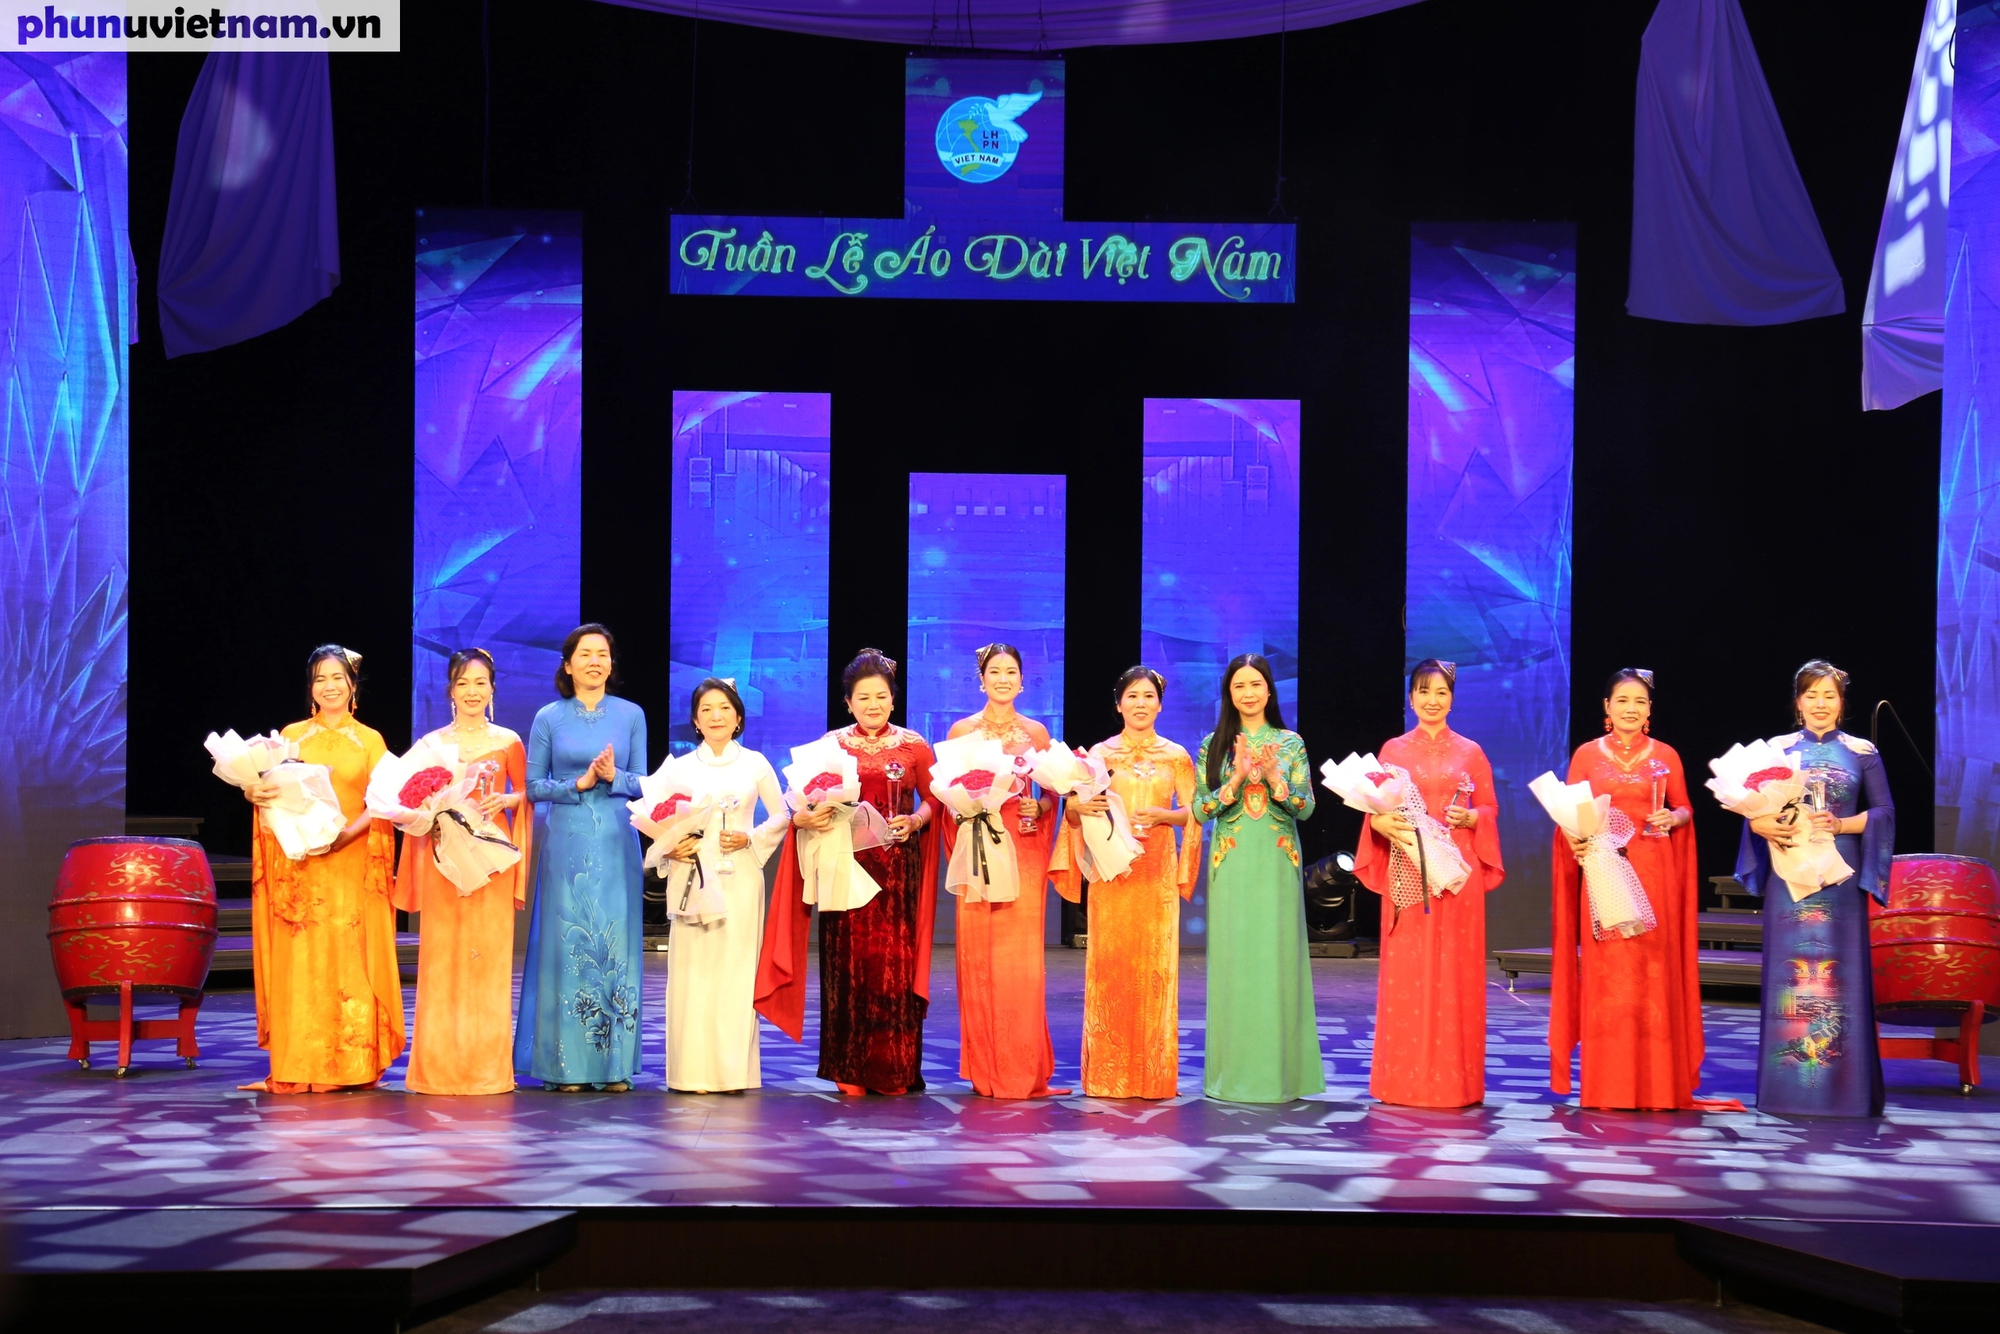 Phó Chủ tịch Hội LHPN Việt Nam Nguyễn Thị Minh Hương và Trần Lan Phương tặng hoa, kỷ niệm chương cho các nhà thiết kế áo dài